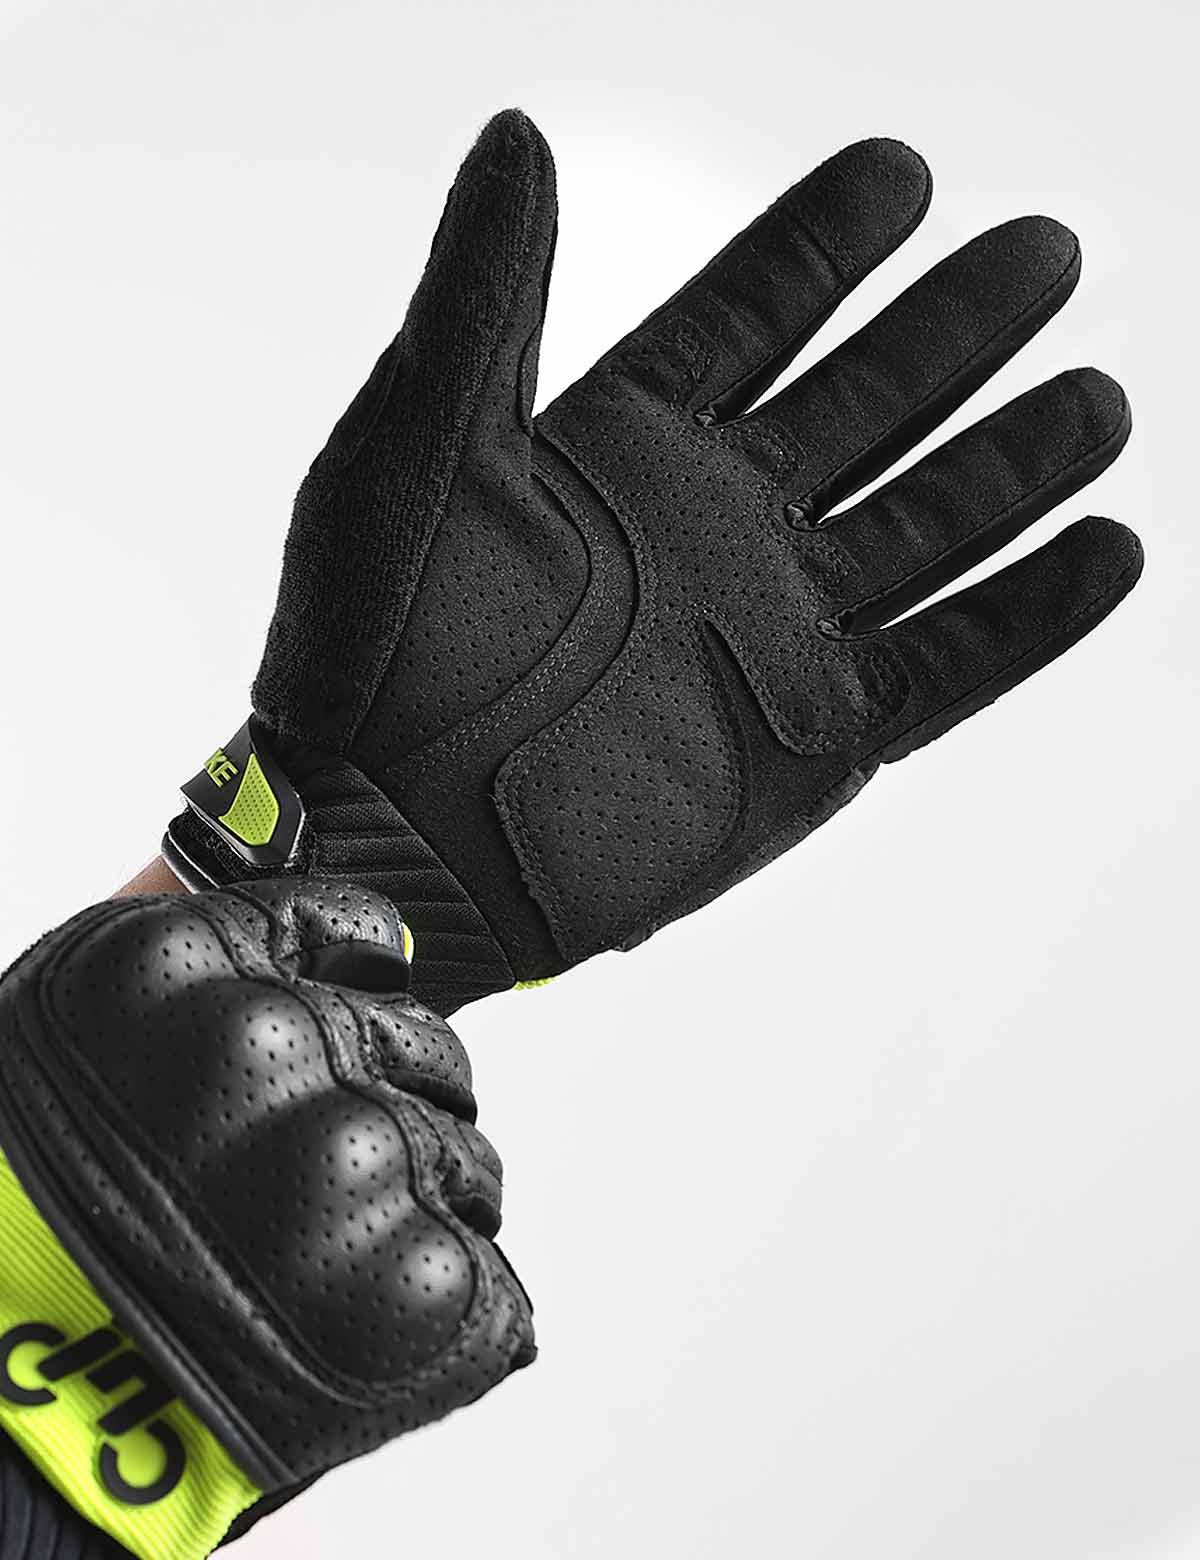 INBIKE Motorcycle Gloves Hard Knuckle Gloves Motorbike Gloves Men Breathbale Carbon Fiber Red X-Large IM803 